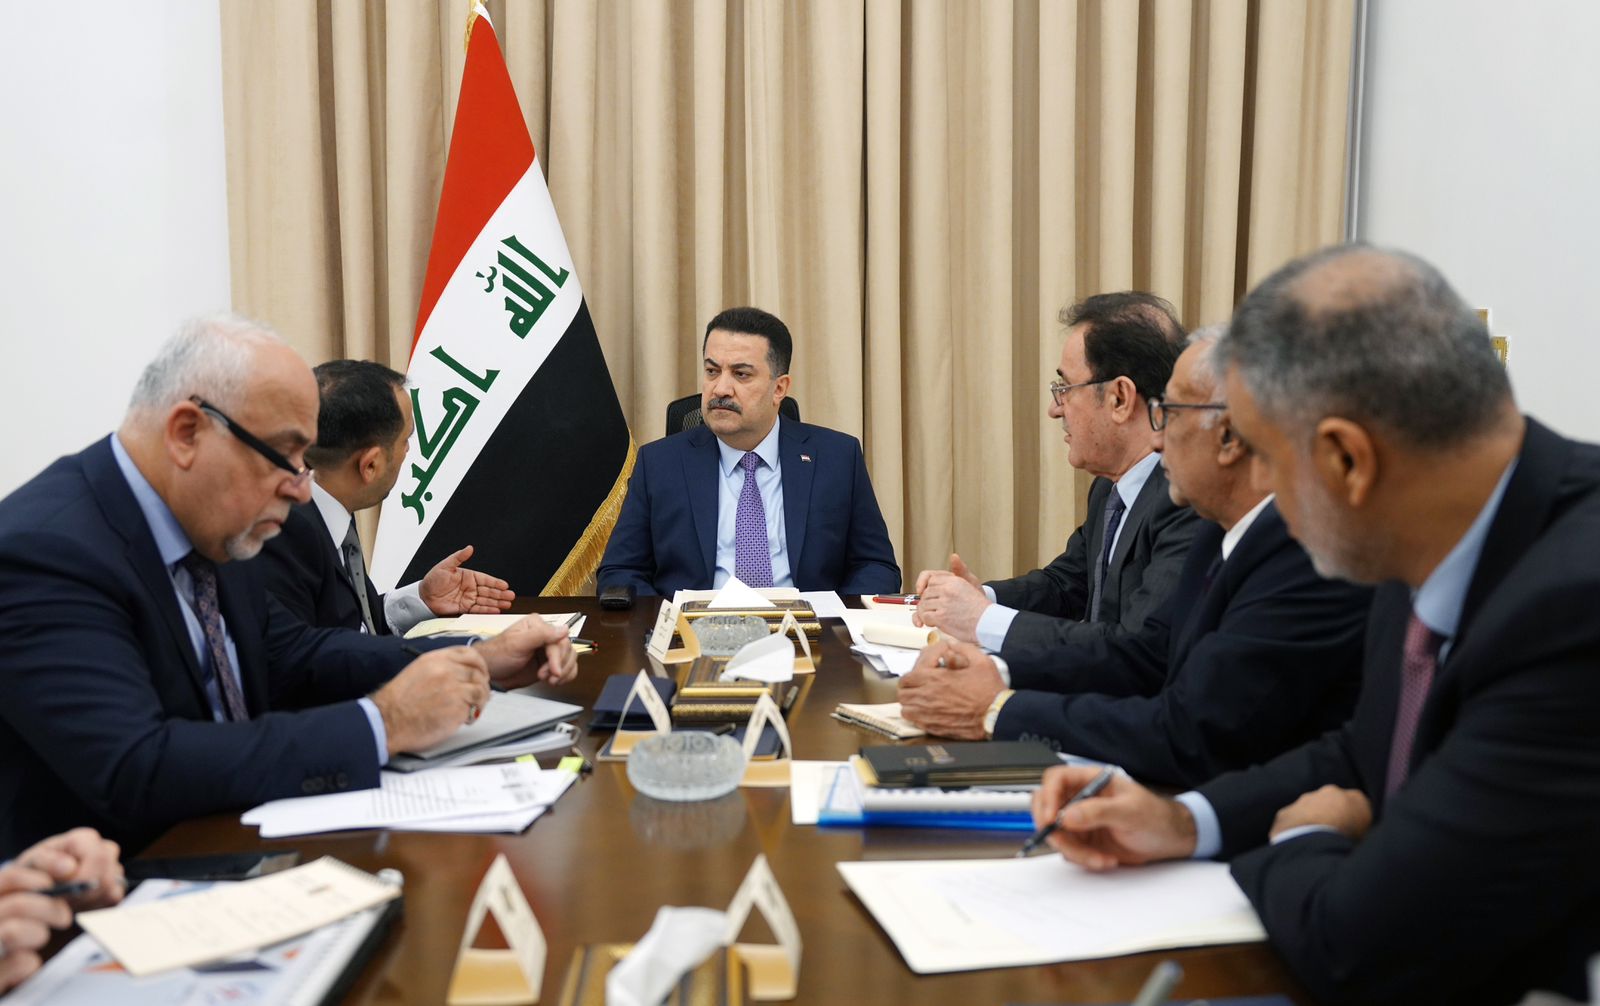 الحكومة العراقية تعلن الاتفاق على إنشاء منظومة ثابتة لمعالجة الغاز المستورد في ميناء الفاو